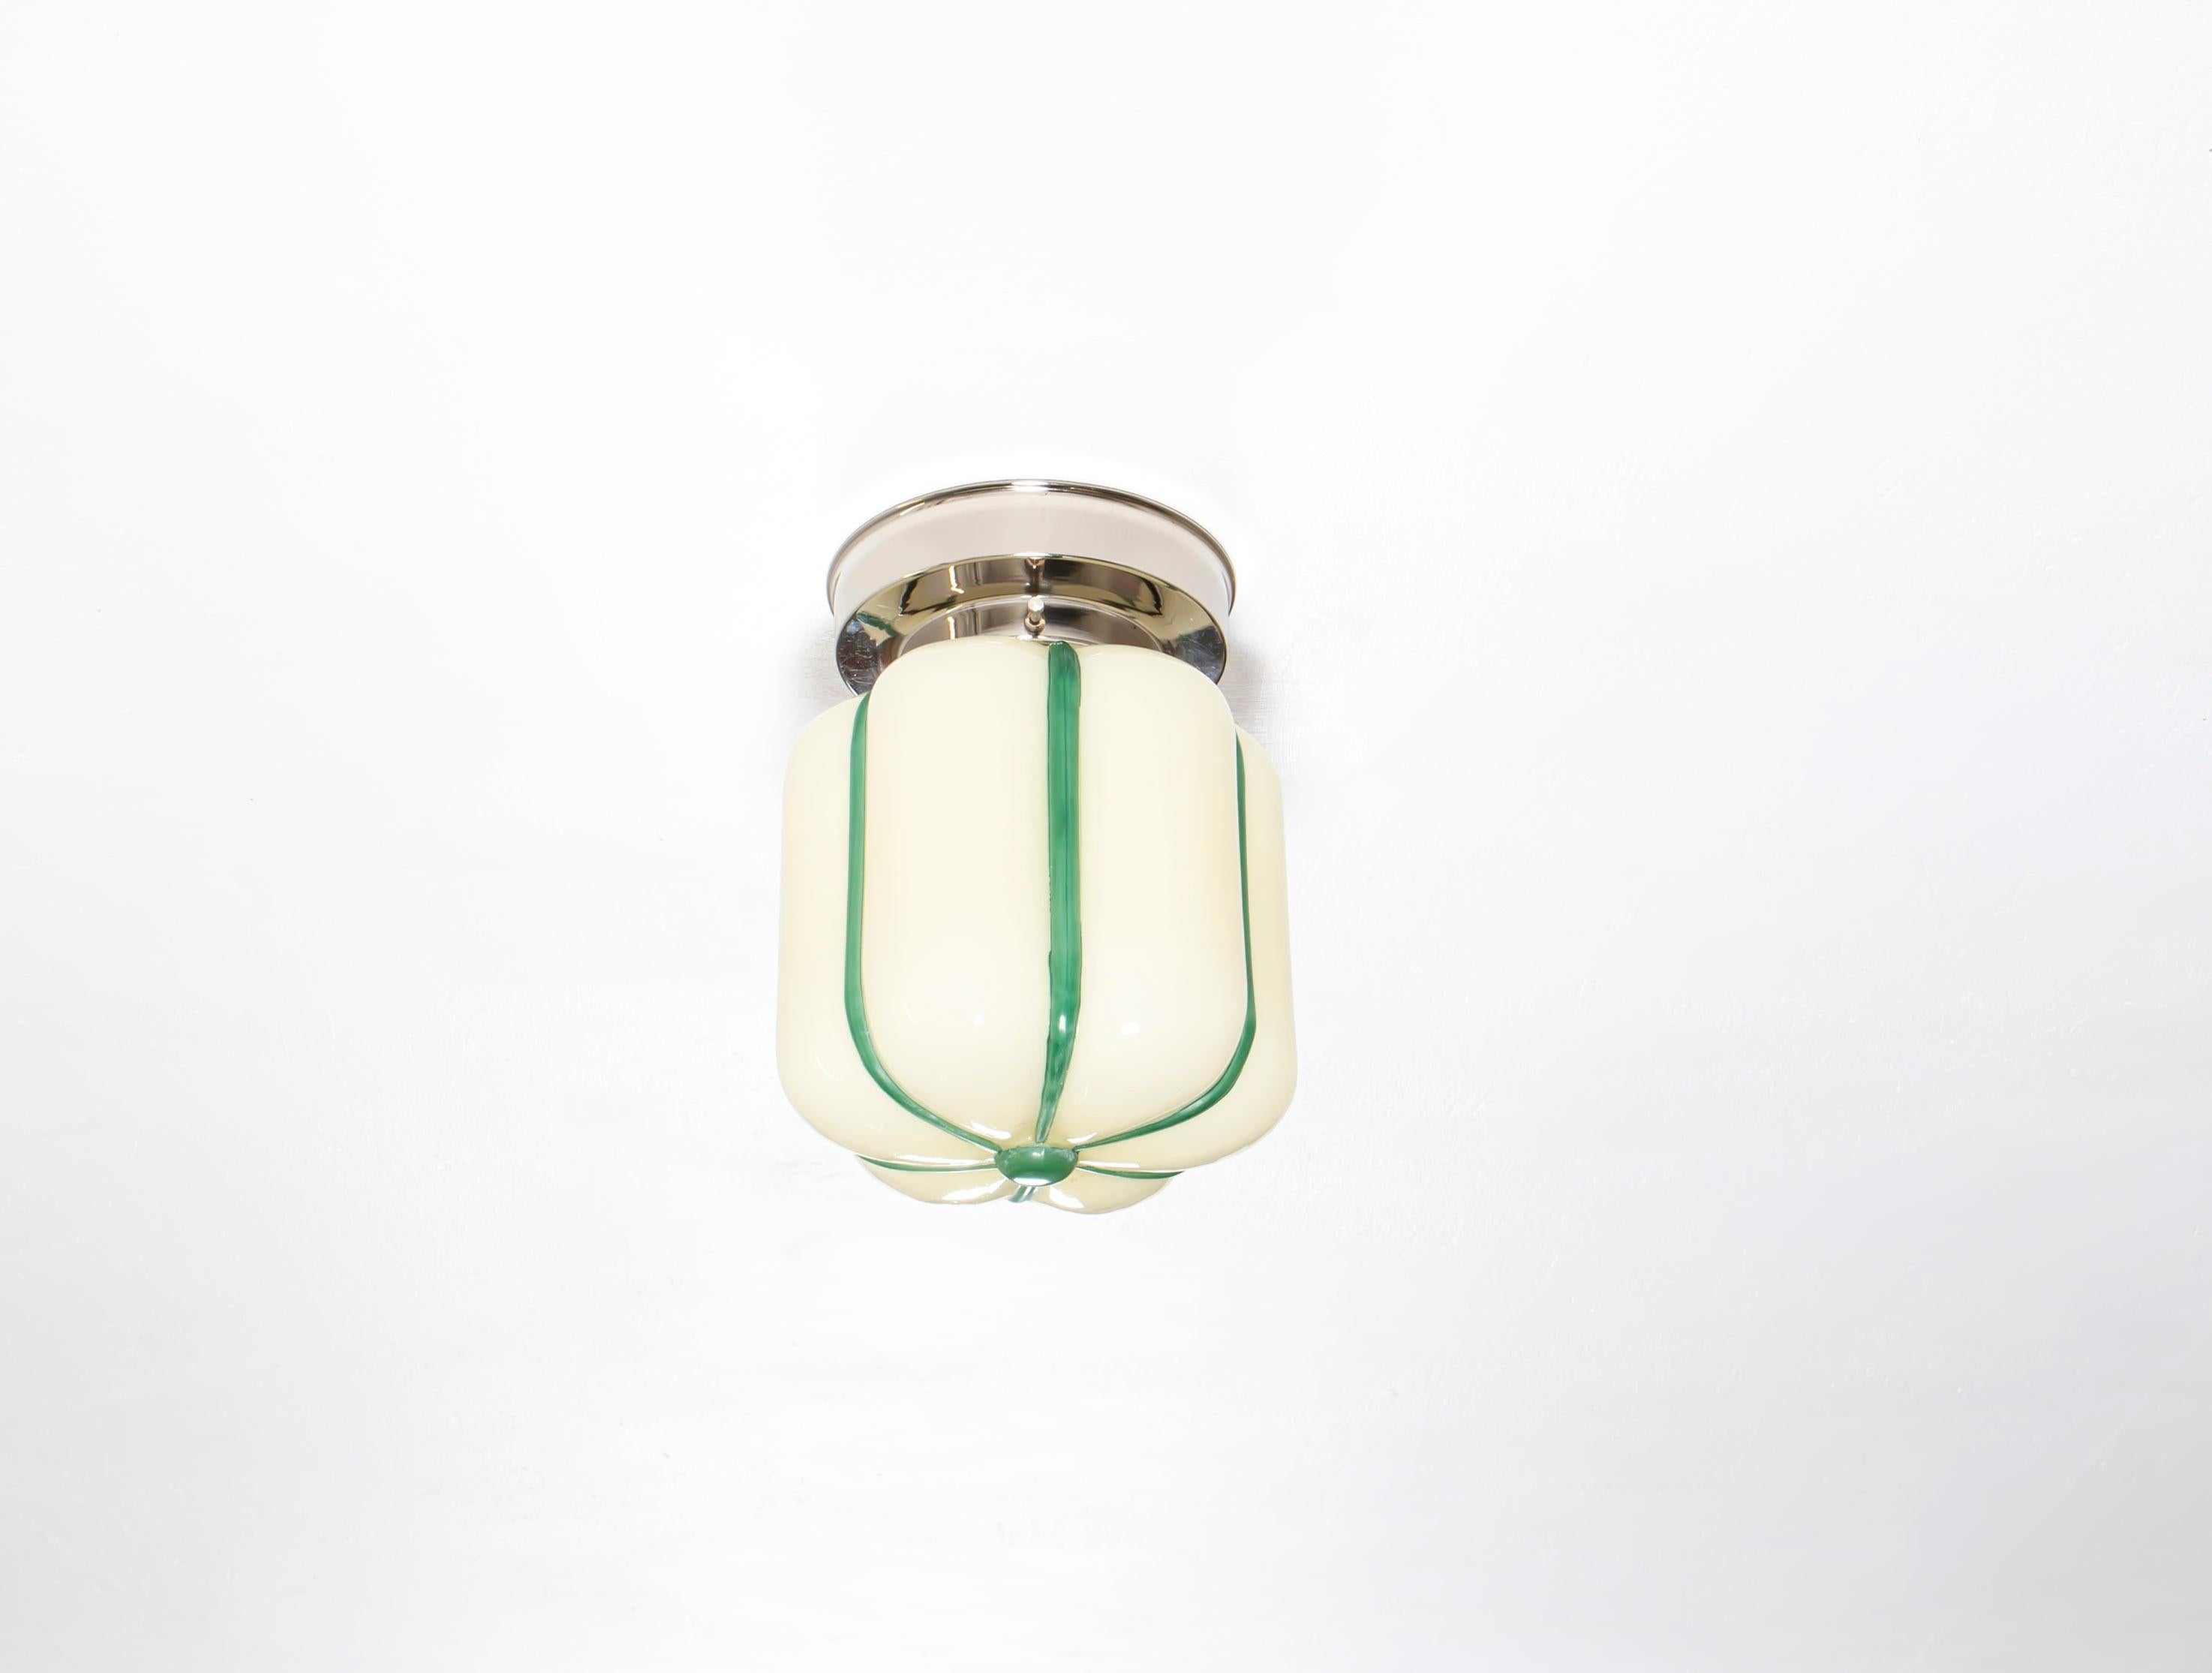 Merveilleuse lampe décorative en verre opalin avec base en métal chromé. Conçue et fabriquée en Norvège à partir de la première moitié des années 1950. La lampe fonctionne parfaitement et est en très bon état vintage. Elle est équipée d'une douille